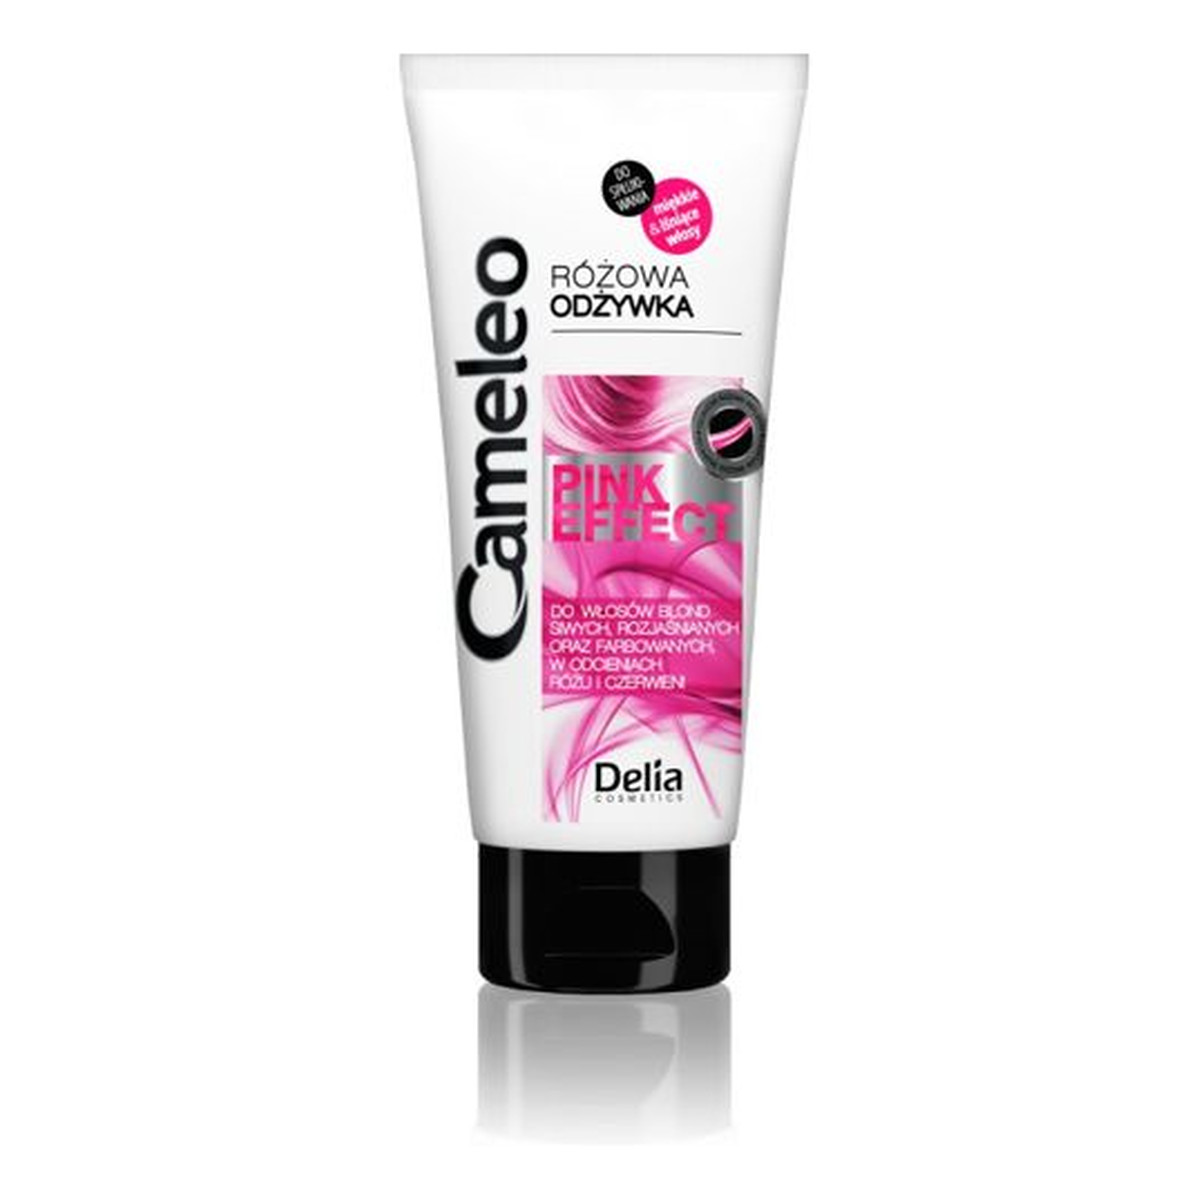 Cameleo Pink Effect Odżywka do włosów różowa 200ml